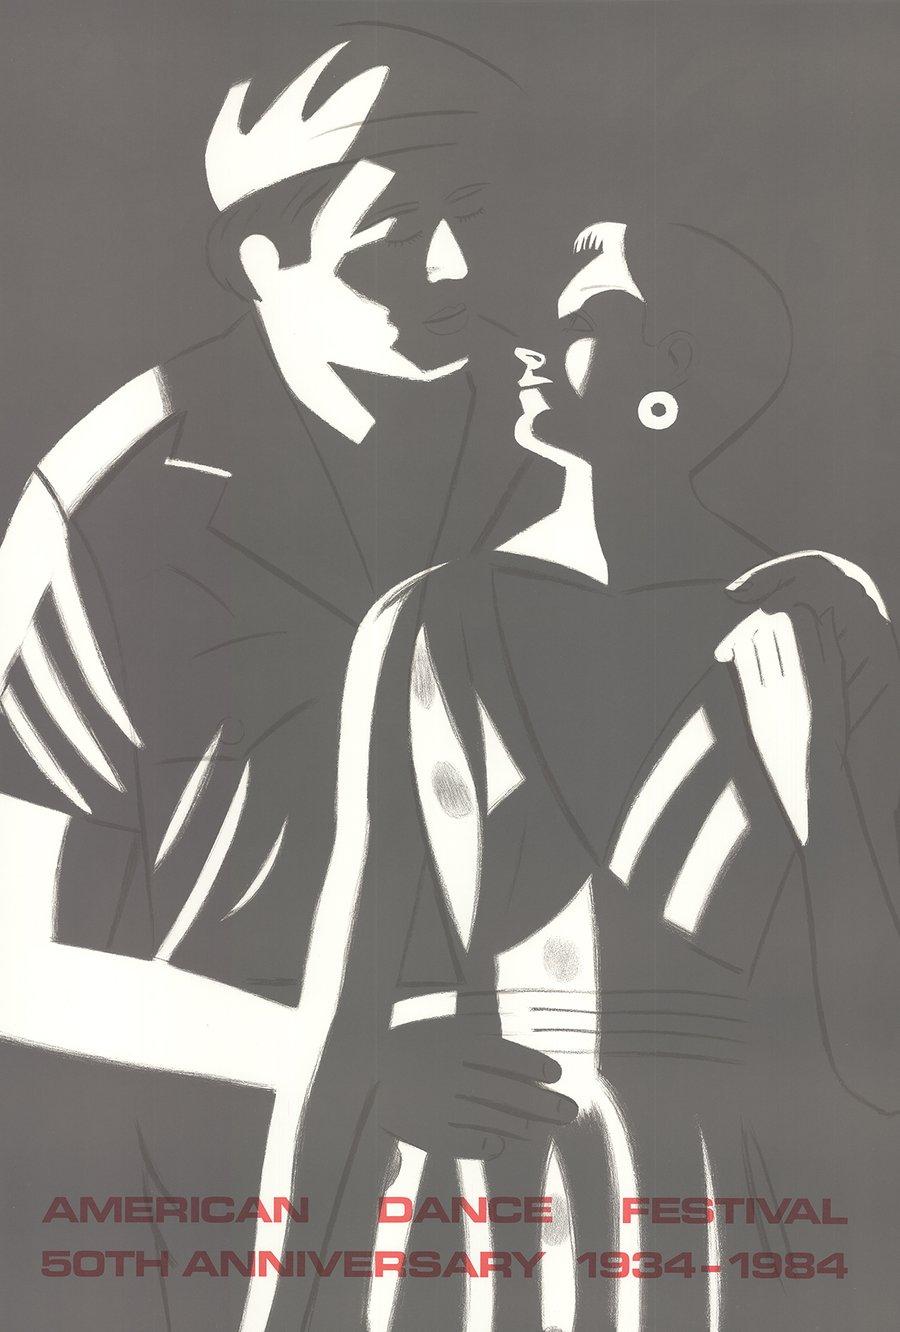 Sku: CB1508
Künstler: Alex Katz
Titel: Sunset-Amerikanisches Tanzfestival
Jahr: 1984
Unterschrieben: Nein
Medium: Lithographie
Papierformat: 37,5 x 25,5 Zoll (95,25 x 64,77 cm)
Bildgröße: 37,5 x 25,5 Zoll (95,25 x 64,77 cm)
Auflagenhöhe: